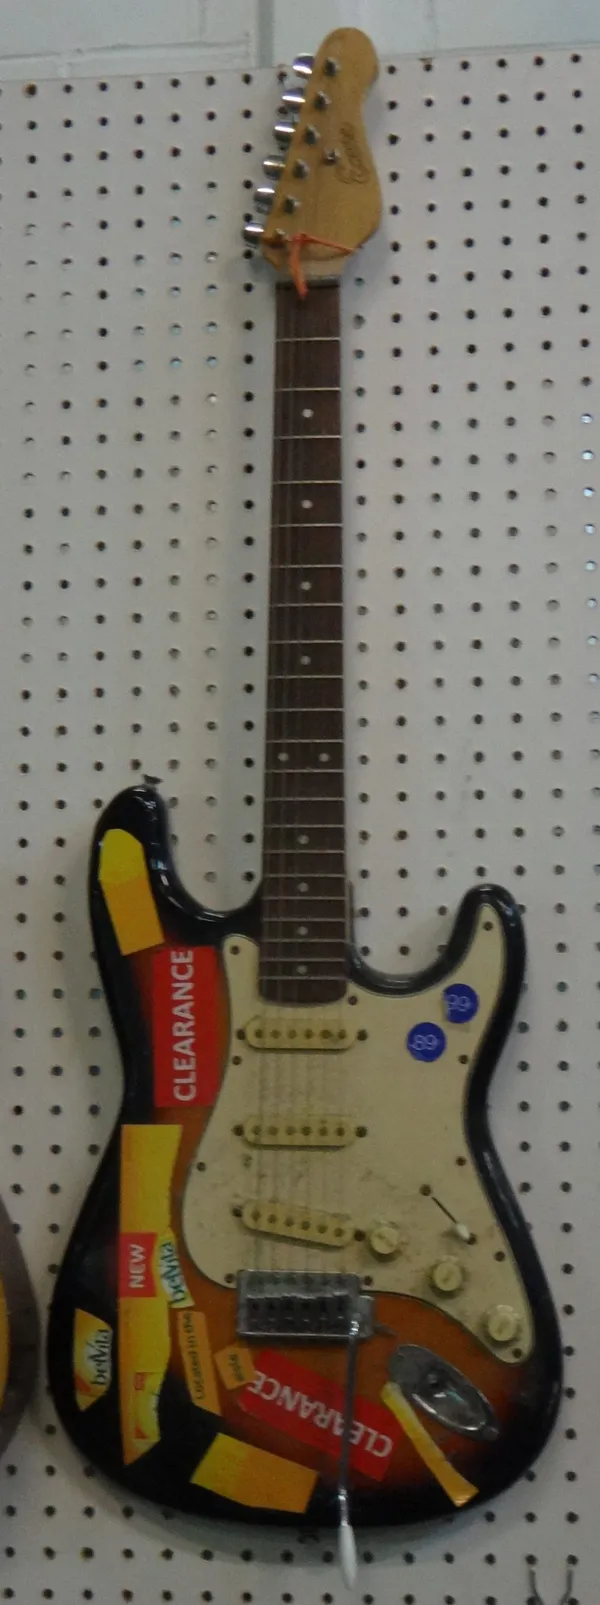 An 'Encore' Sunburst electric guitar